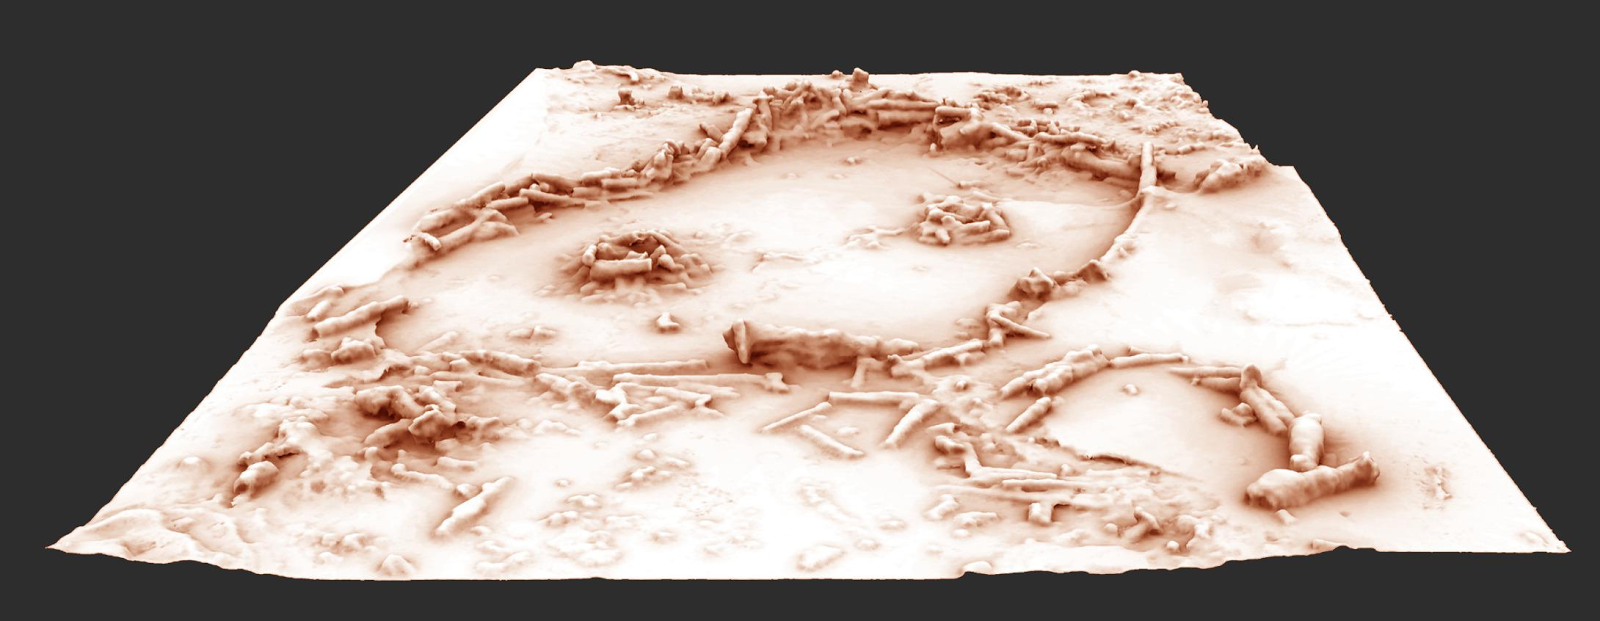 Reconstrucción 3D de la estructura en forma de anillo hecho de estalagmitas por Neandertales tempranos | Imagen de Xavier Muth, realizada in situ